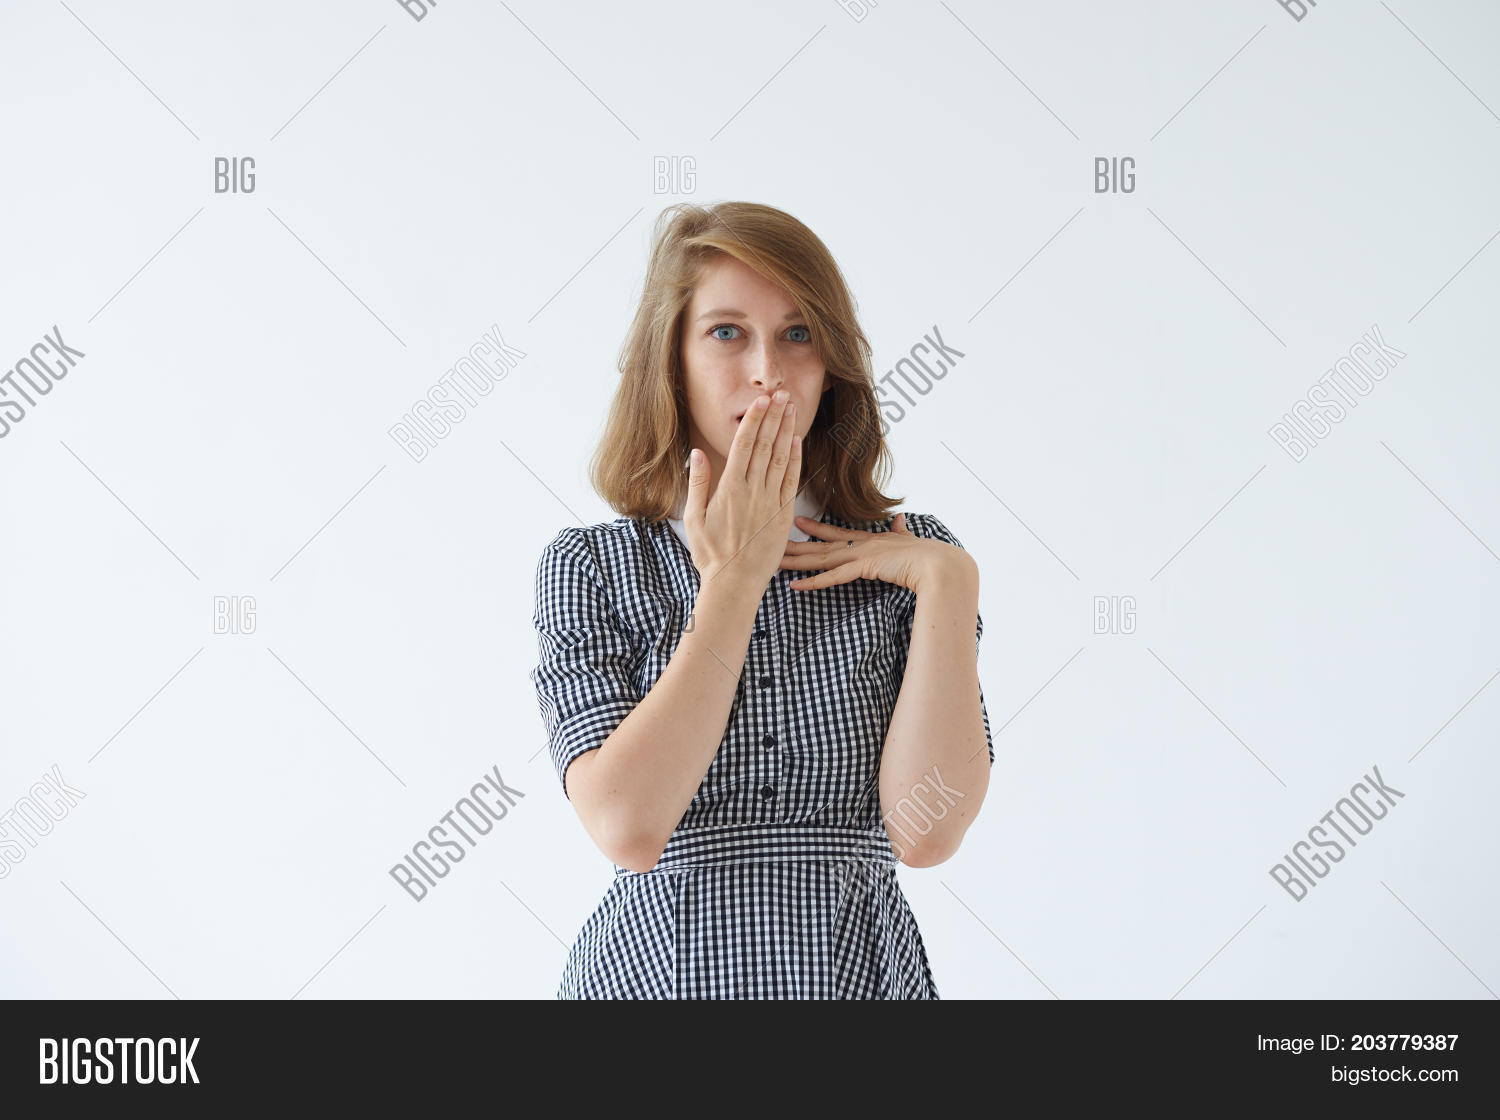 Прикривання рота сукнею мовою тіла (розуміння жестів)